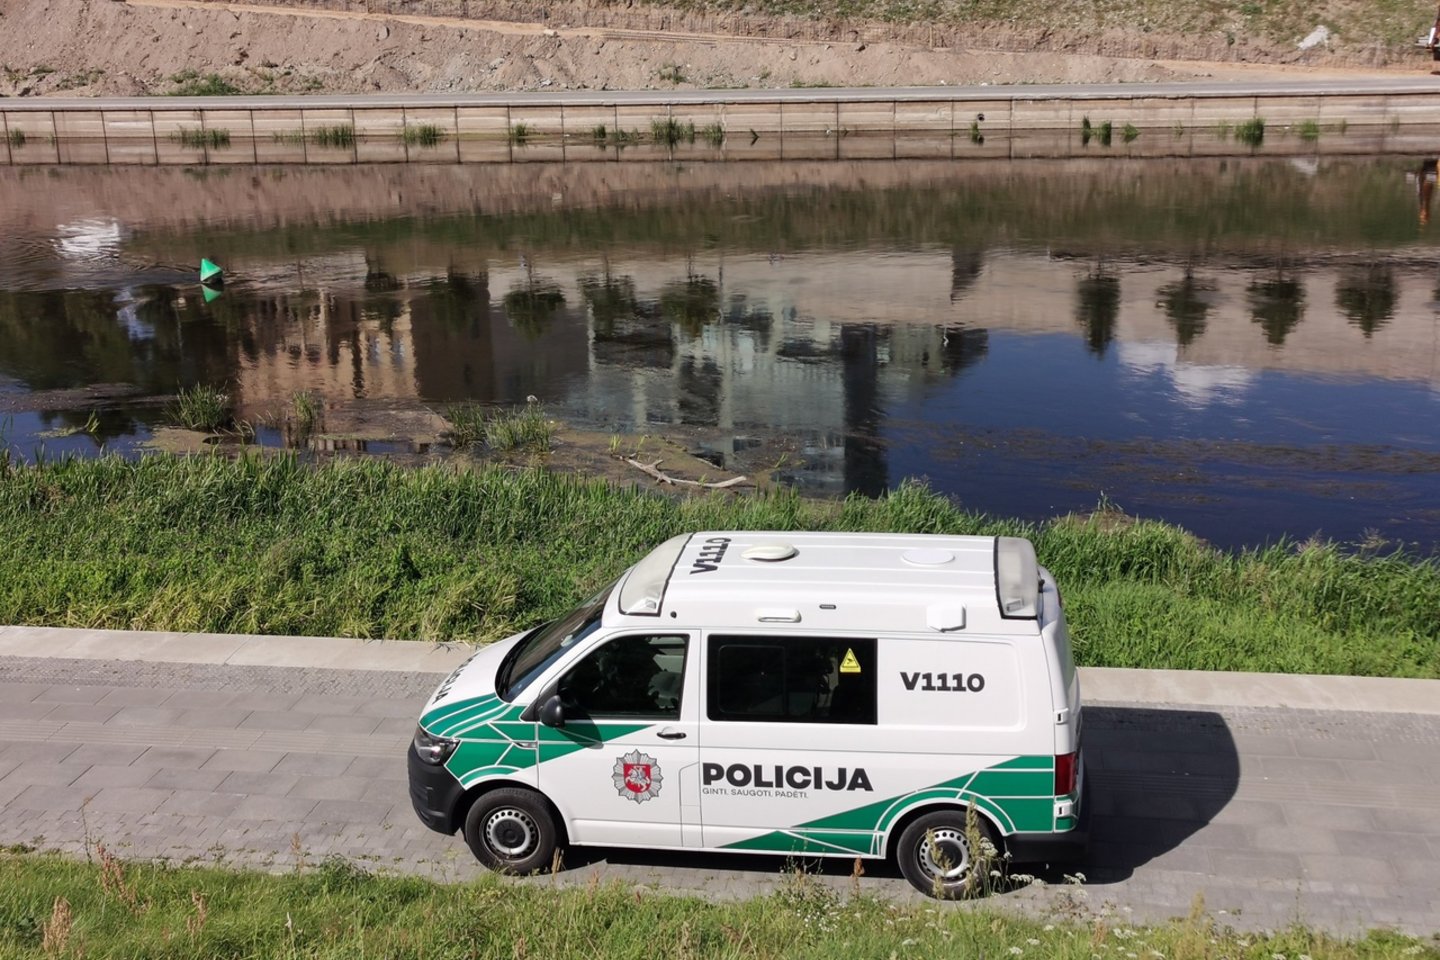  Vilniaus policijai pirmadienį pranešta apie Neries upėje miesto centre greta Žaliojo tilto pastebėtą daiktą į aviacinę bombą.<br> R.Danisevičiaus nuotr.